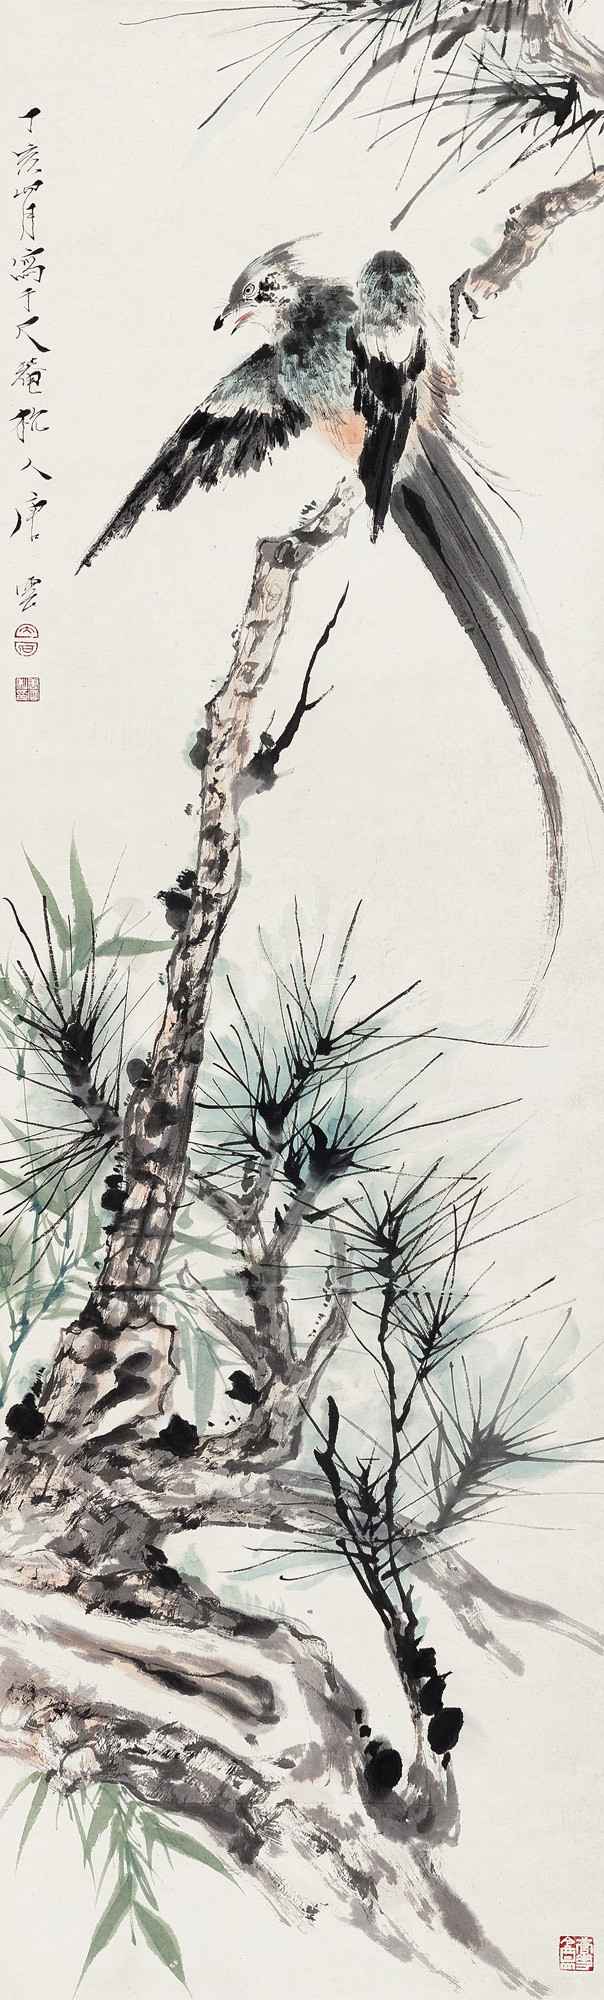 Birds ane Pine